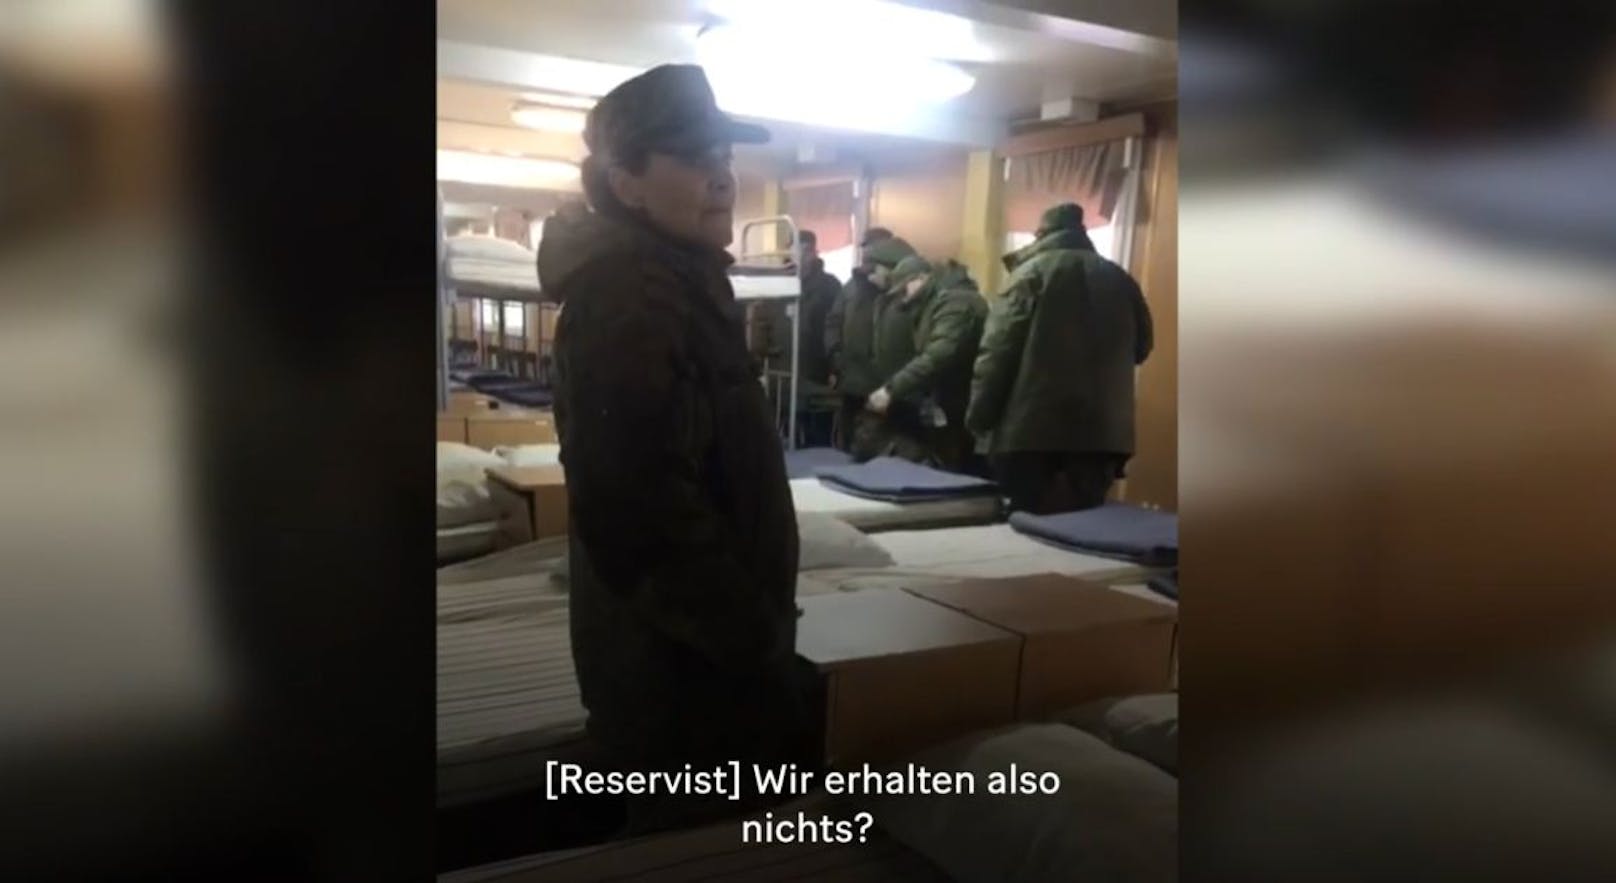 Die russischen Reservisten bekommen scheinbar nicht mehr als Uniformen und Waffen in die Hand gedrückt.